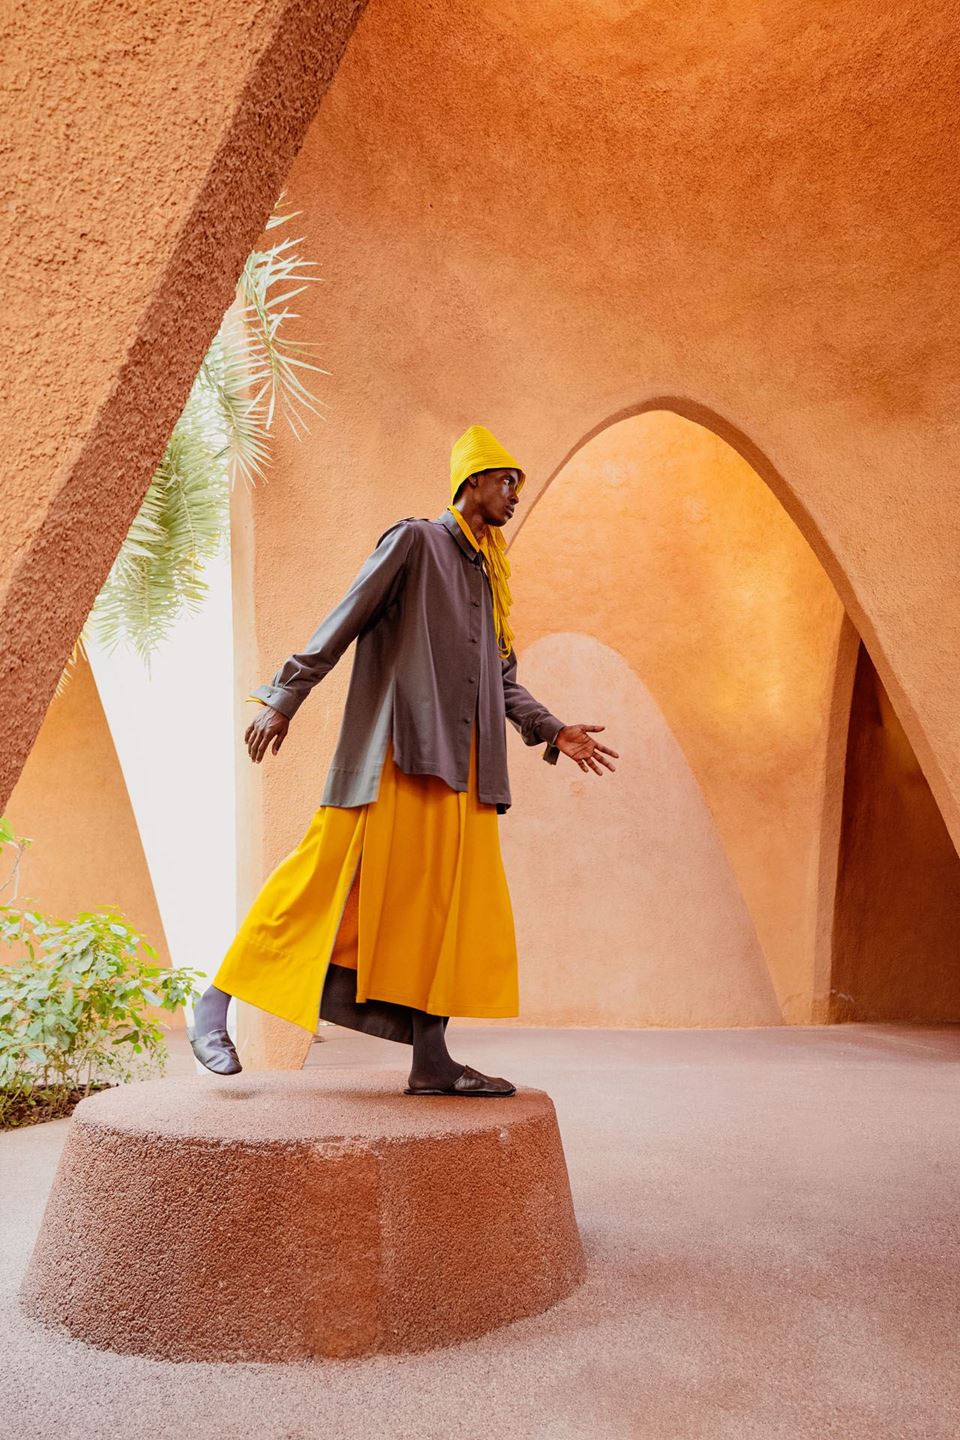 الجناح النمساوي يربط الثقافات من خلال الموضة في إكسبو 2020 دبي